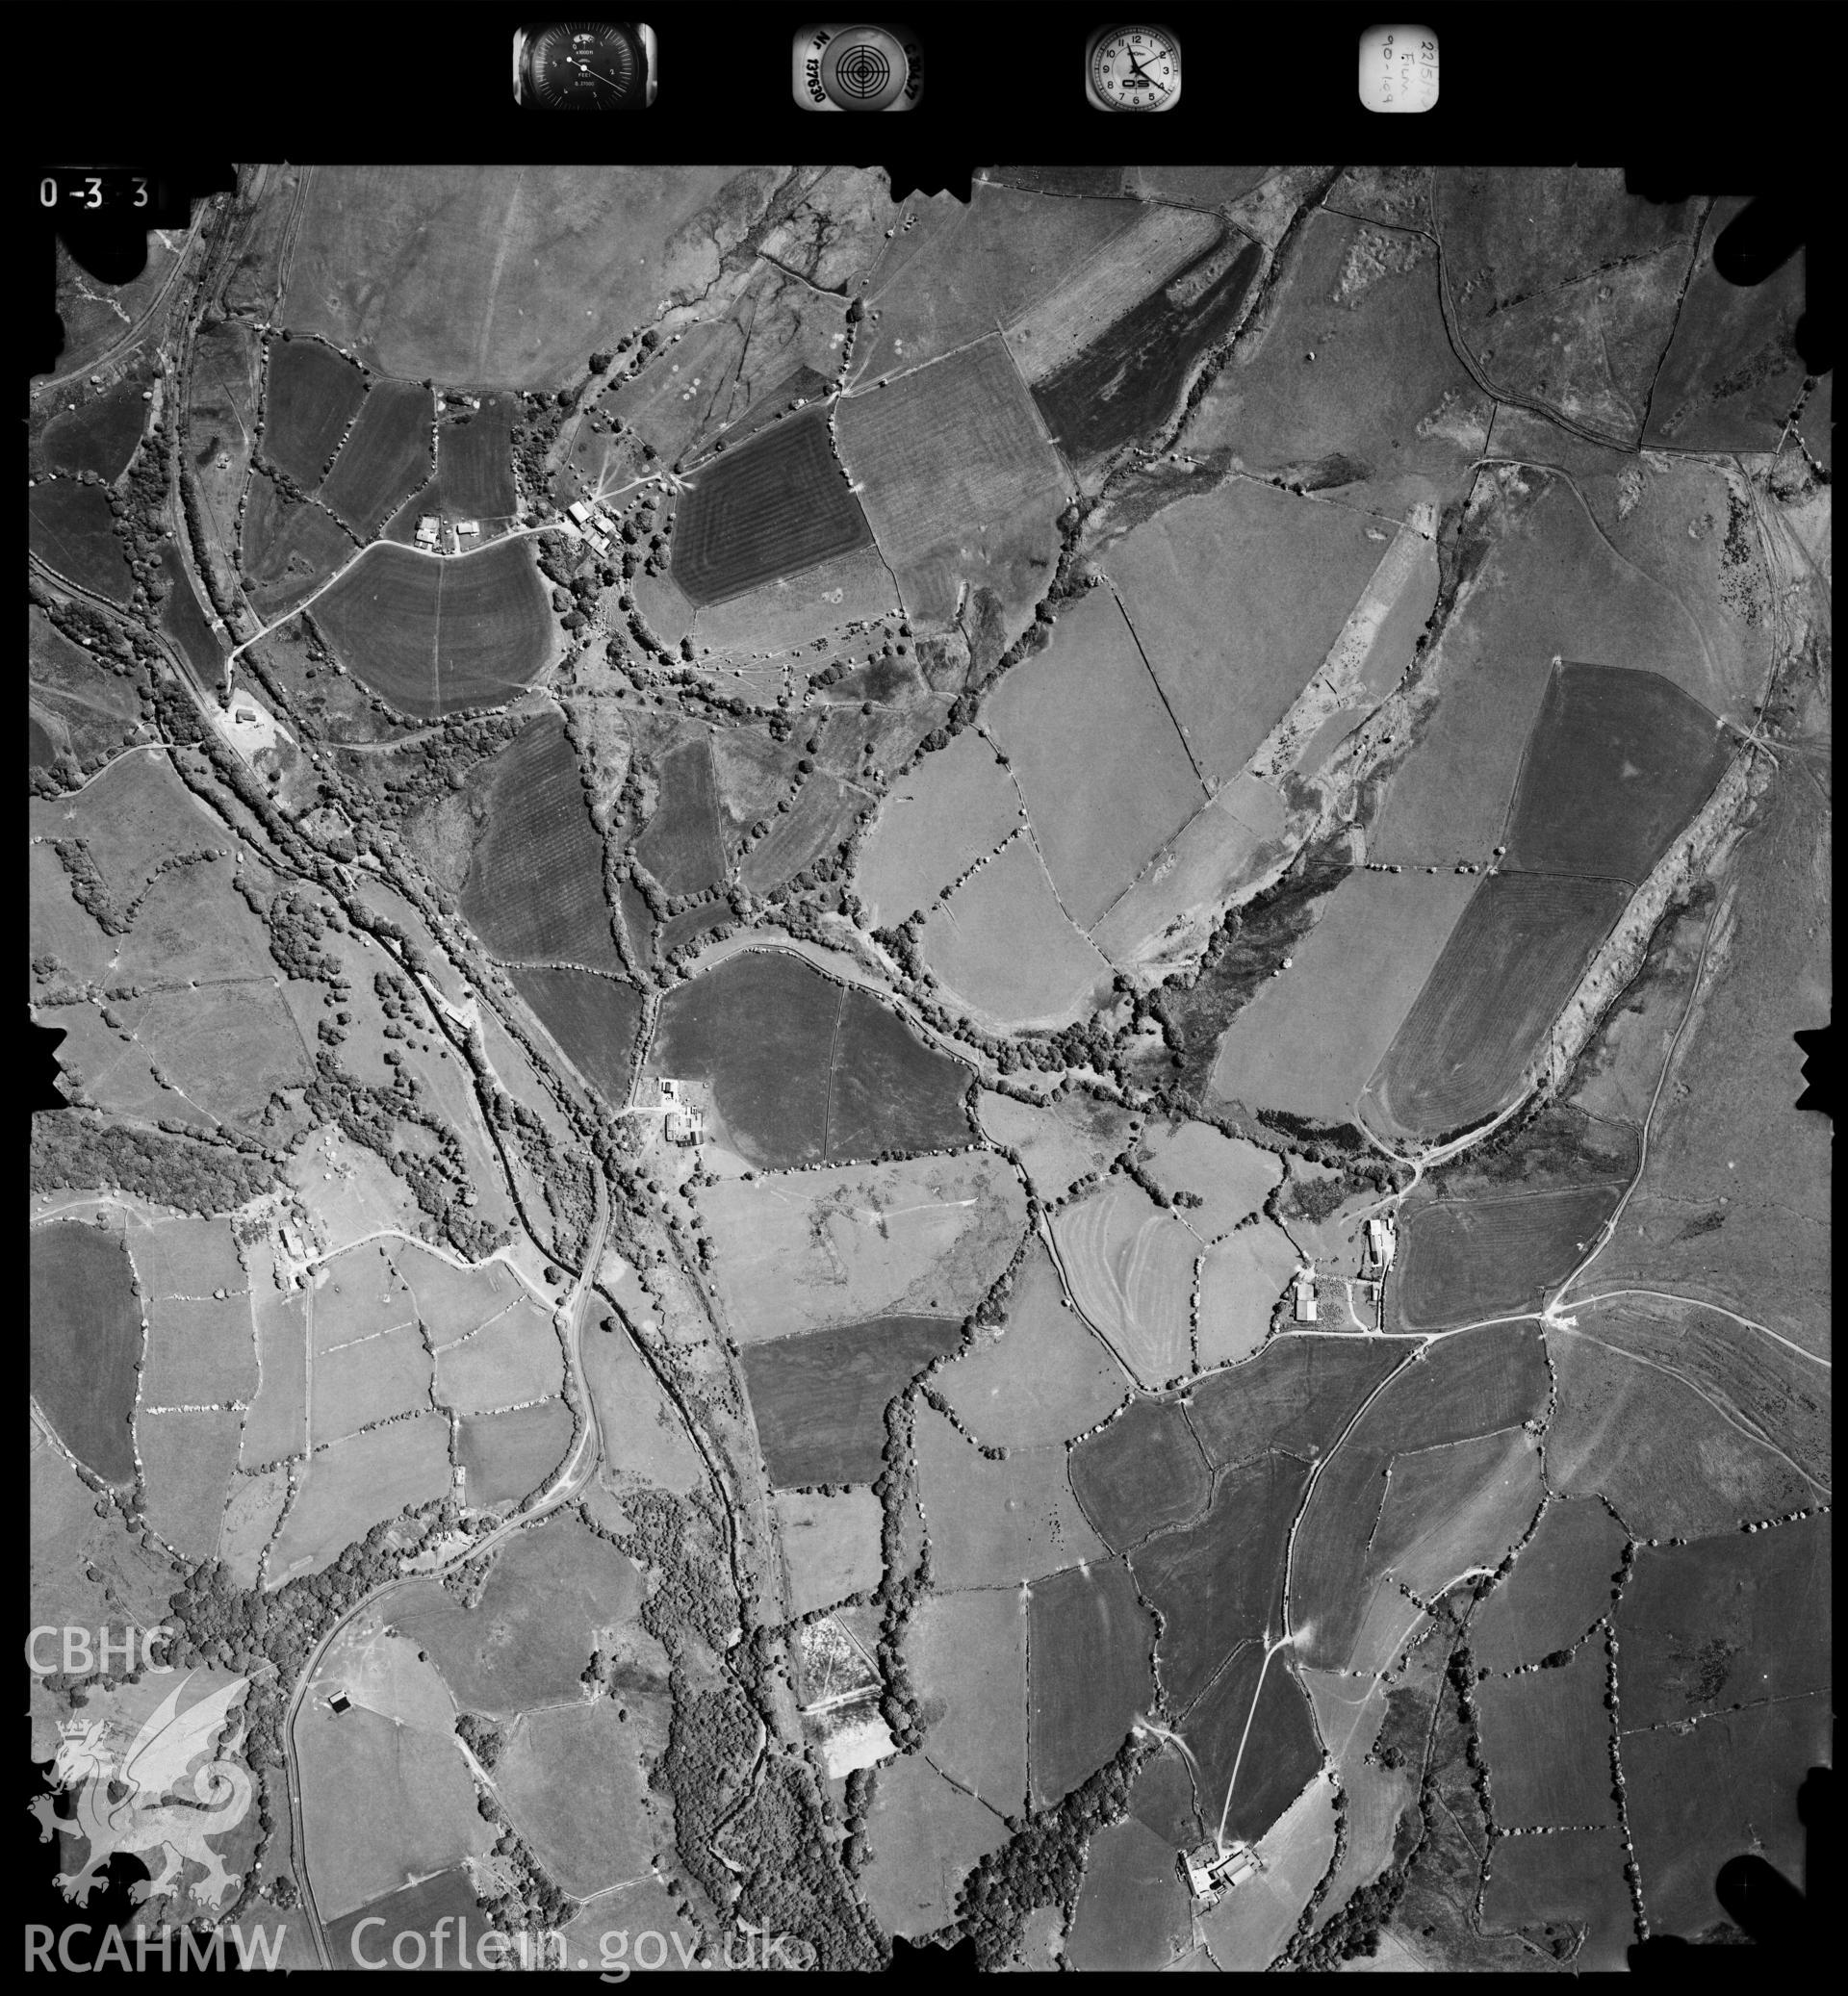 Digitized copy of an aerial photograph showing Mynydd Maendy, Glamorgan, taken by Ordnance Survey, 1990.